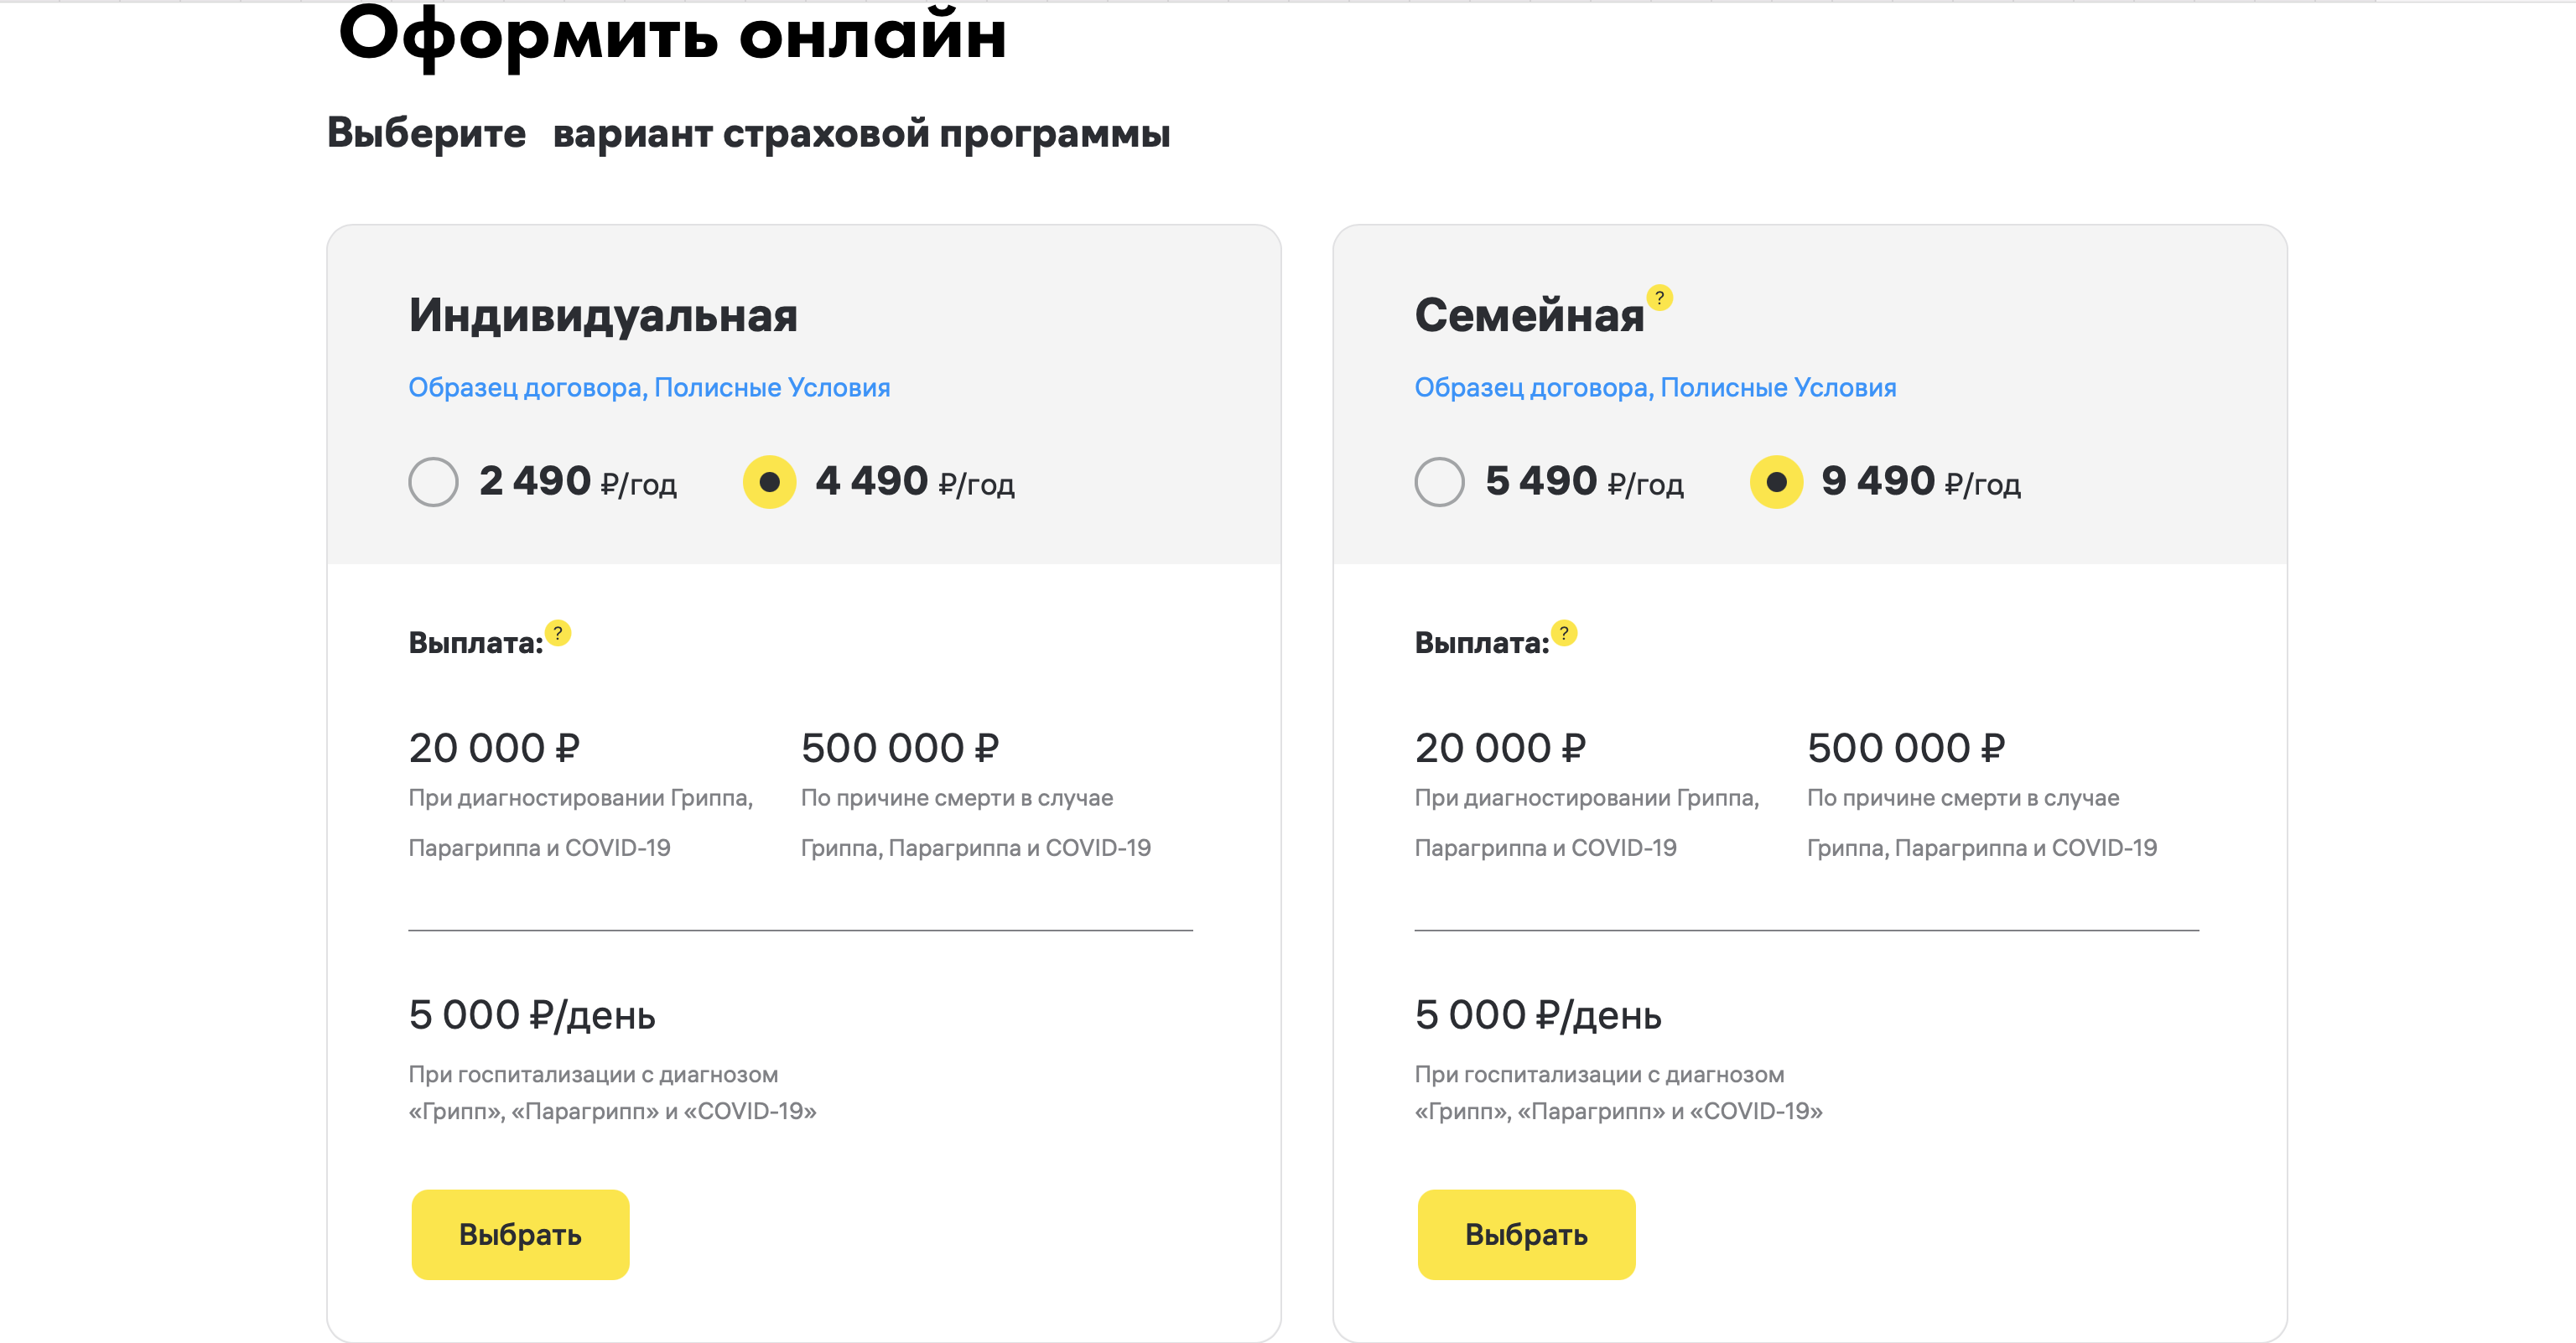 В самой дешевой "Базовой" индивидуальной программе за 2 500 рублей не предусмотрена выплата на случай смерти, но есть риск диагностирования заболеваний, озвученных ранее, и госпитализация.